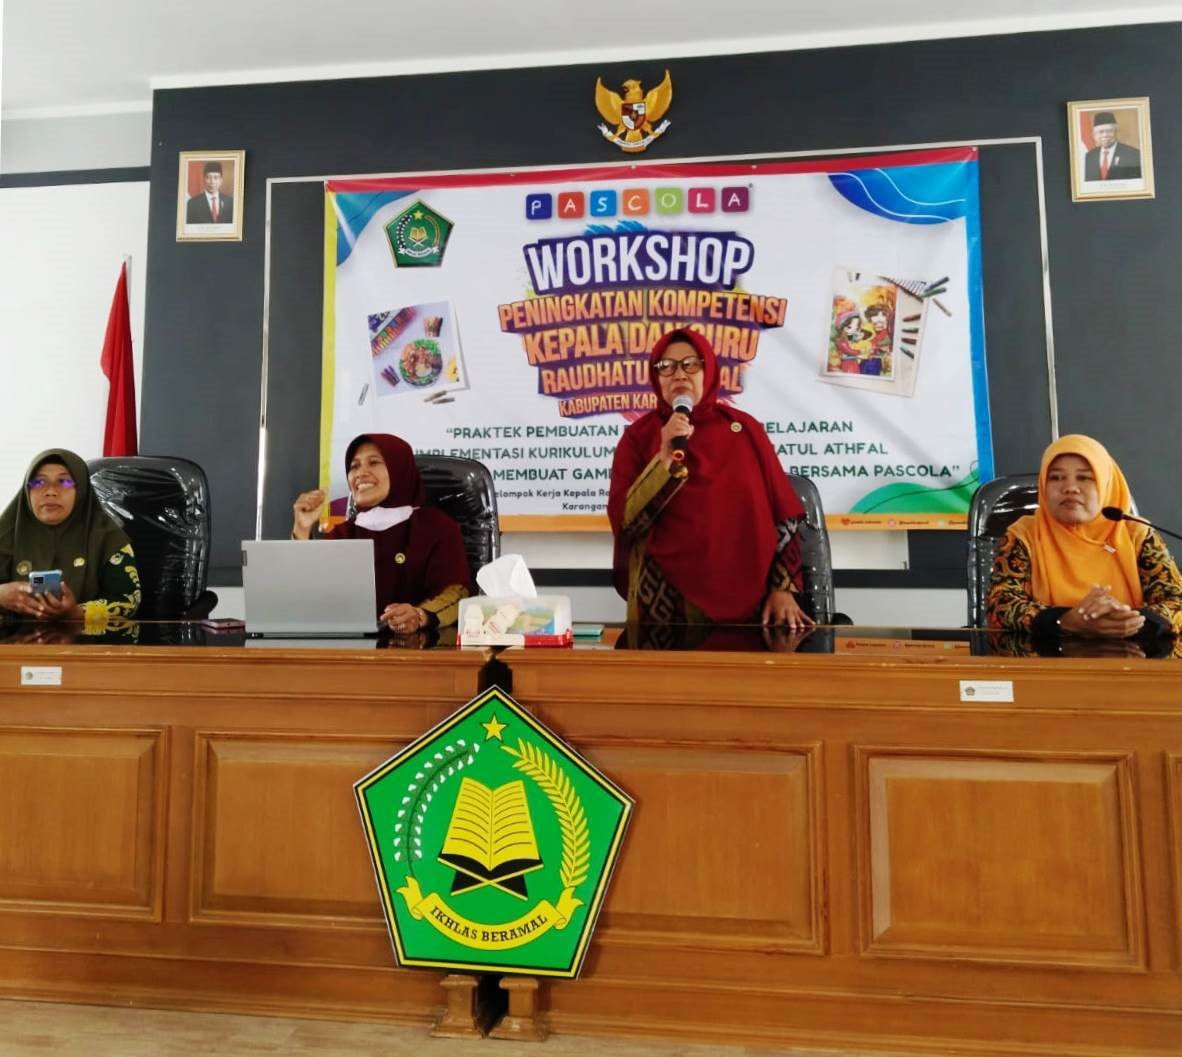 Workshop Peningkatan Kompetensi Kelompok Kerja Guru Raudhatul Athfal Kabupaten Karanganyar